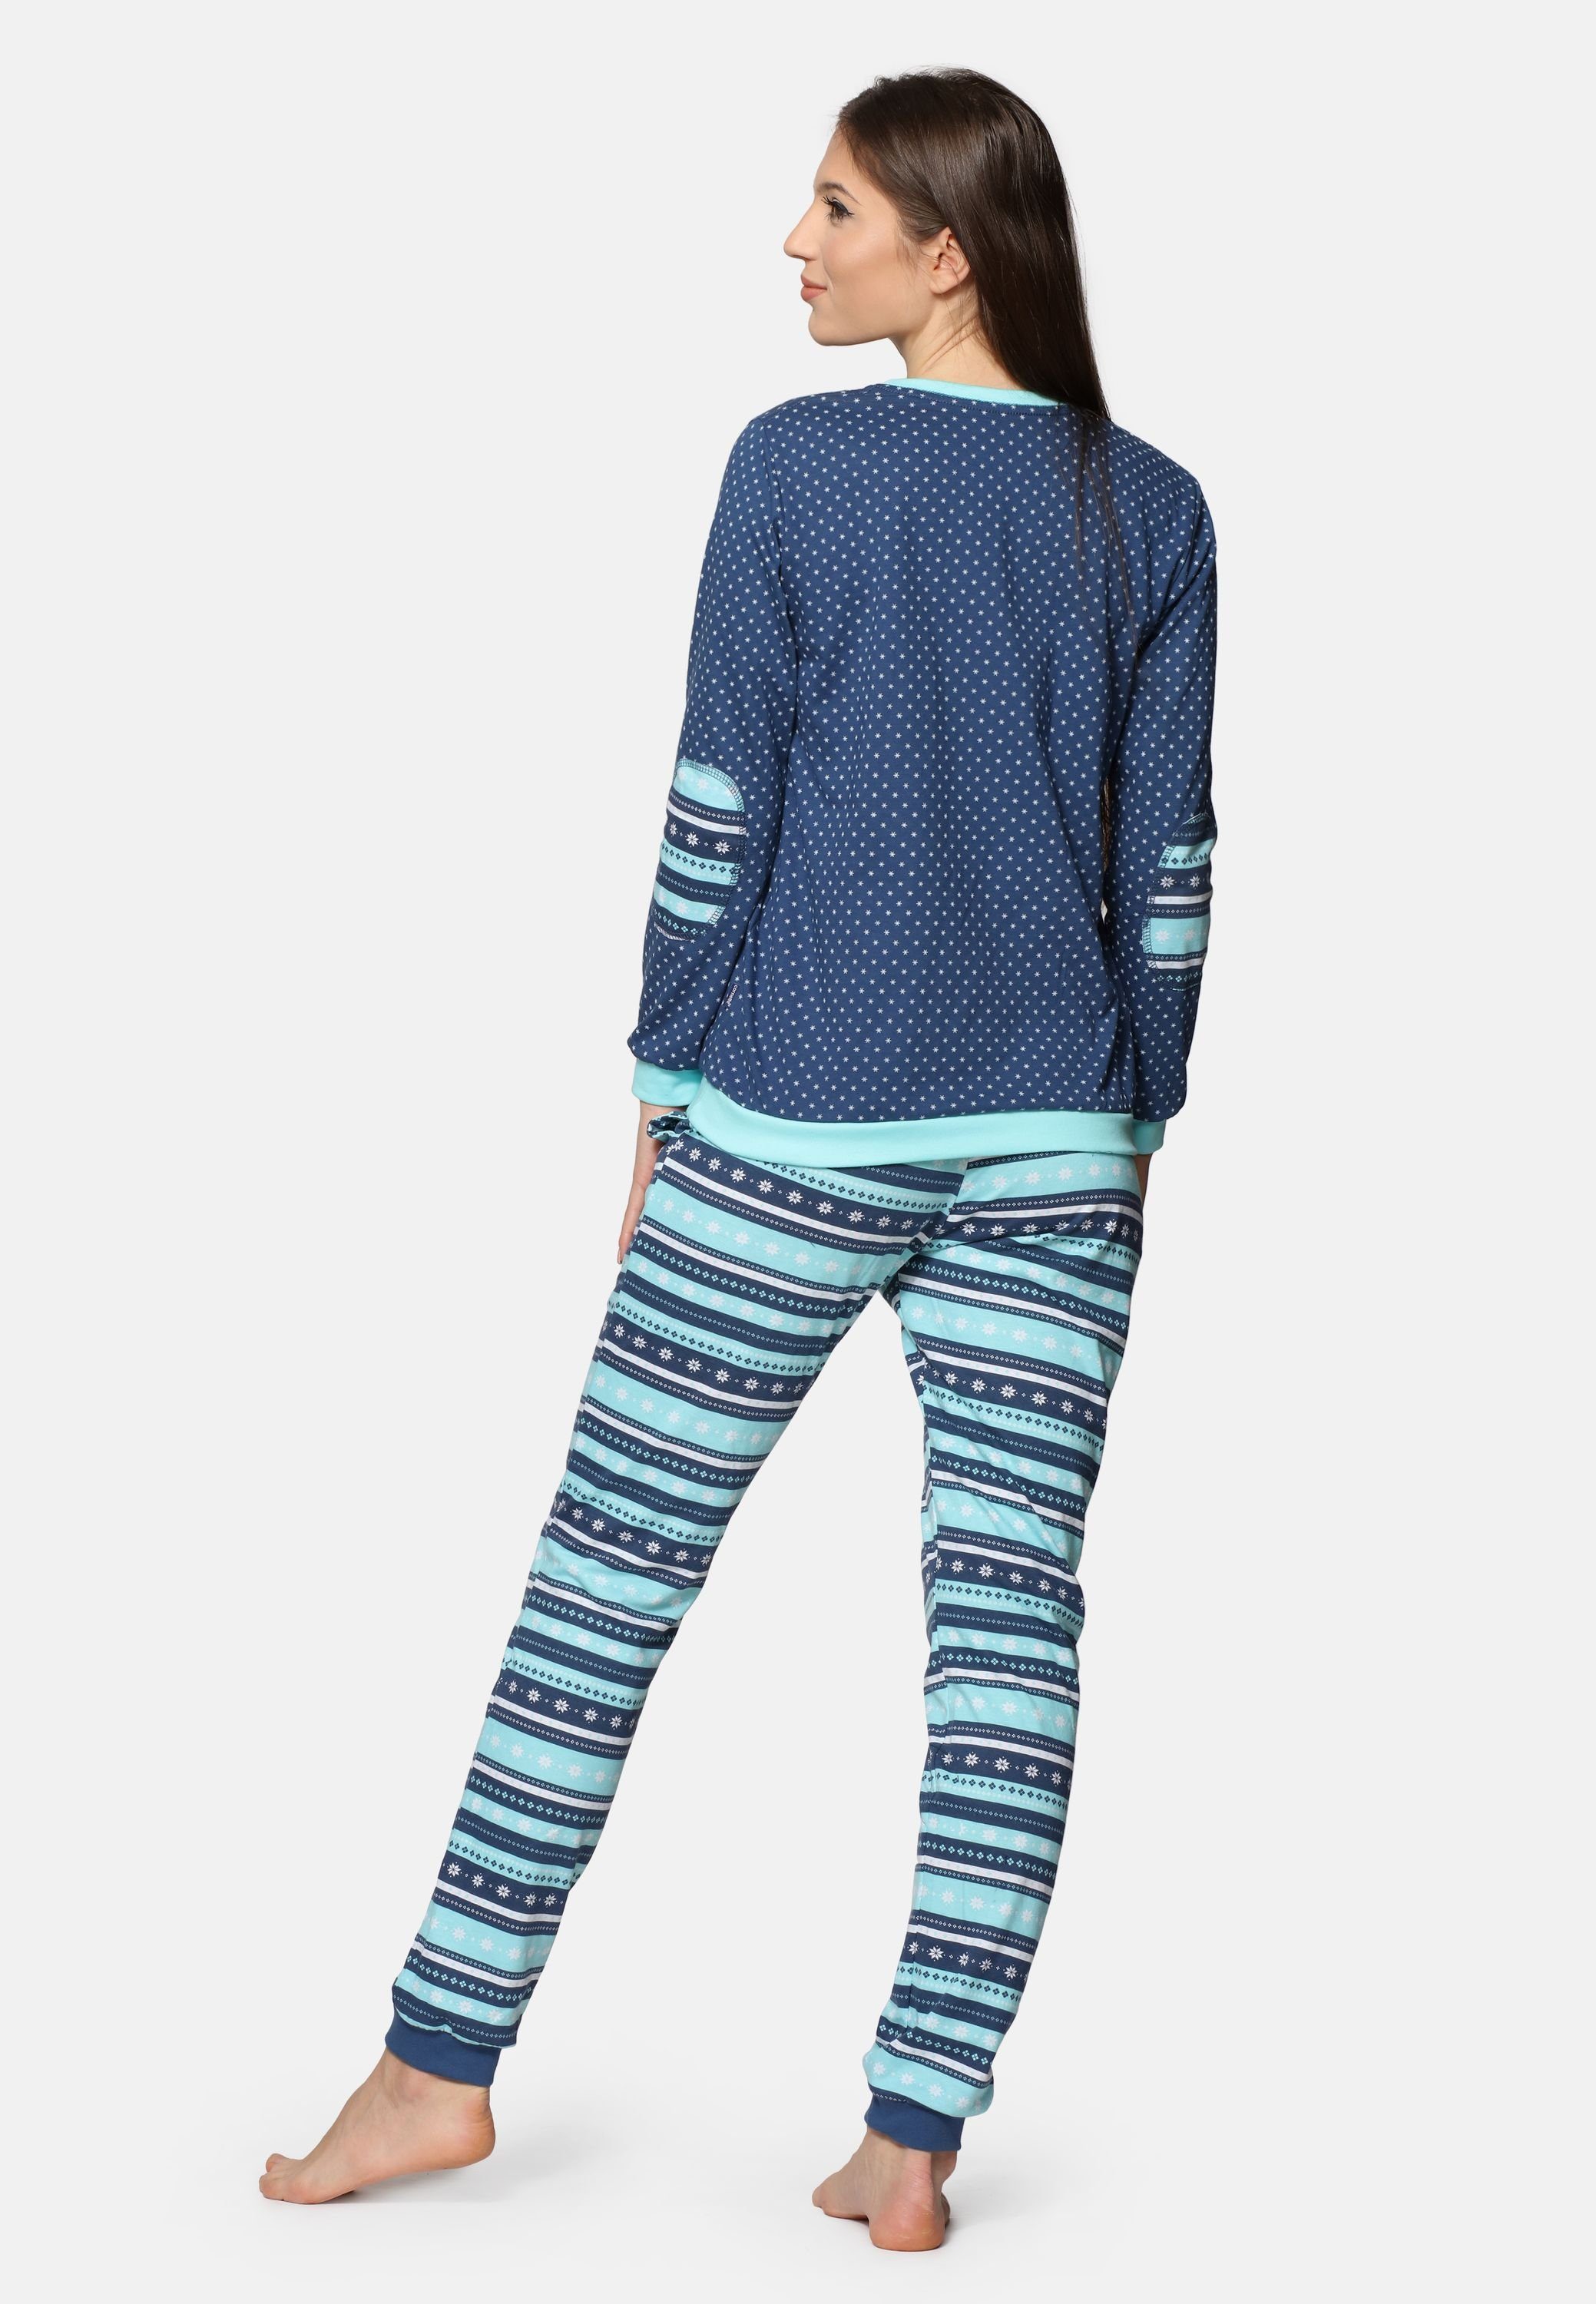 Rundhals Cornette Schlafanzug 634 Jeans/Türkis Damen mit Pyjama Baumwolle Schlafanzug Langarm Zweiteiler